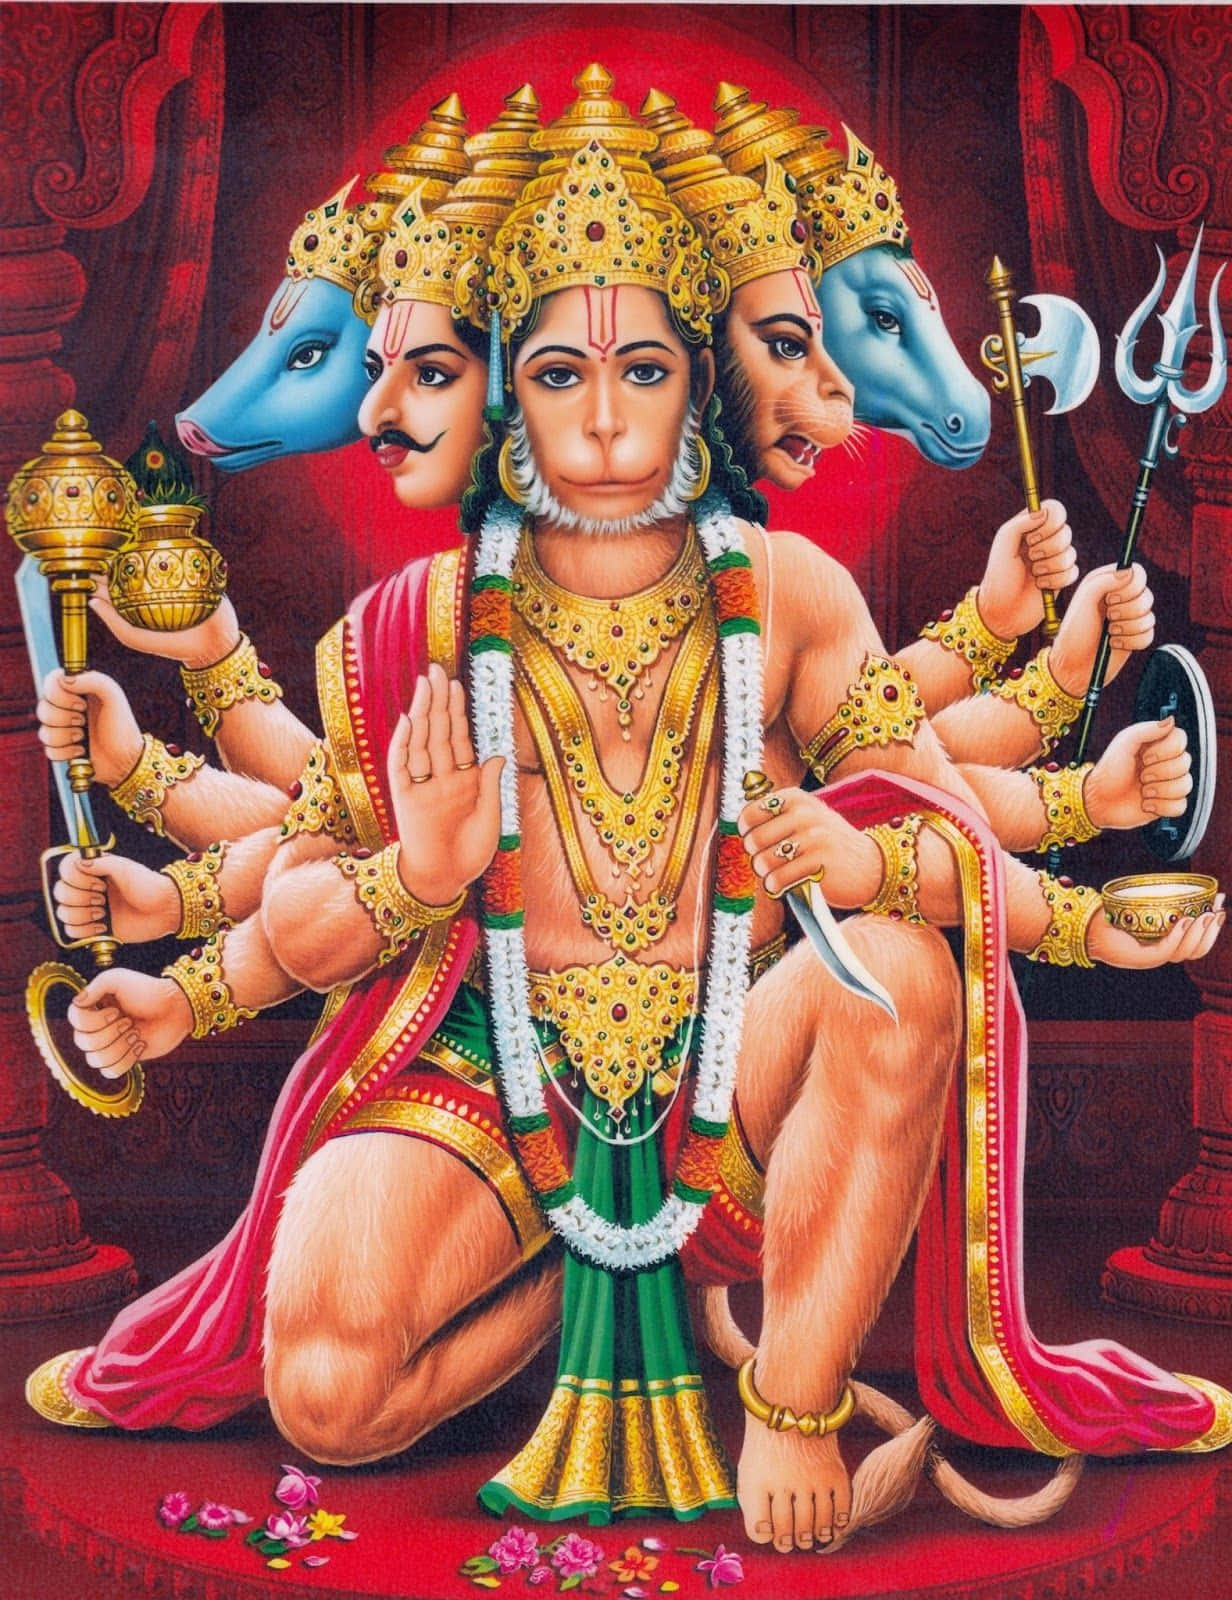 Imagende Hanuman Con Muchas Caras